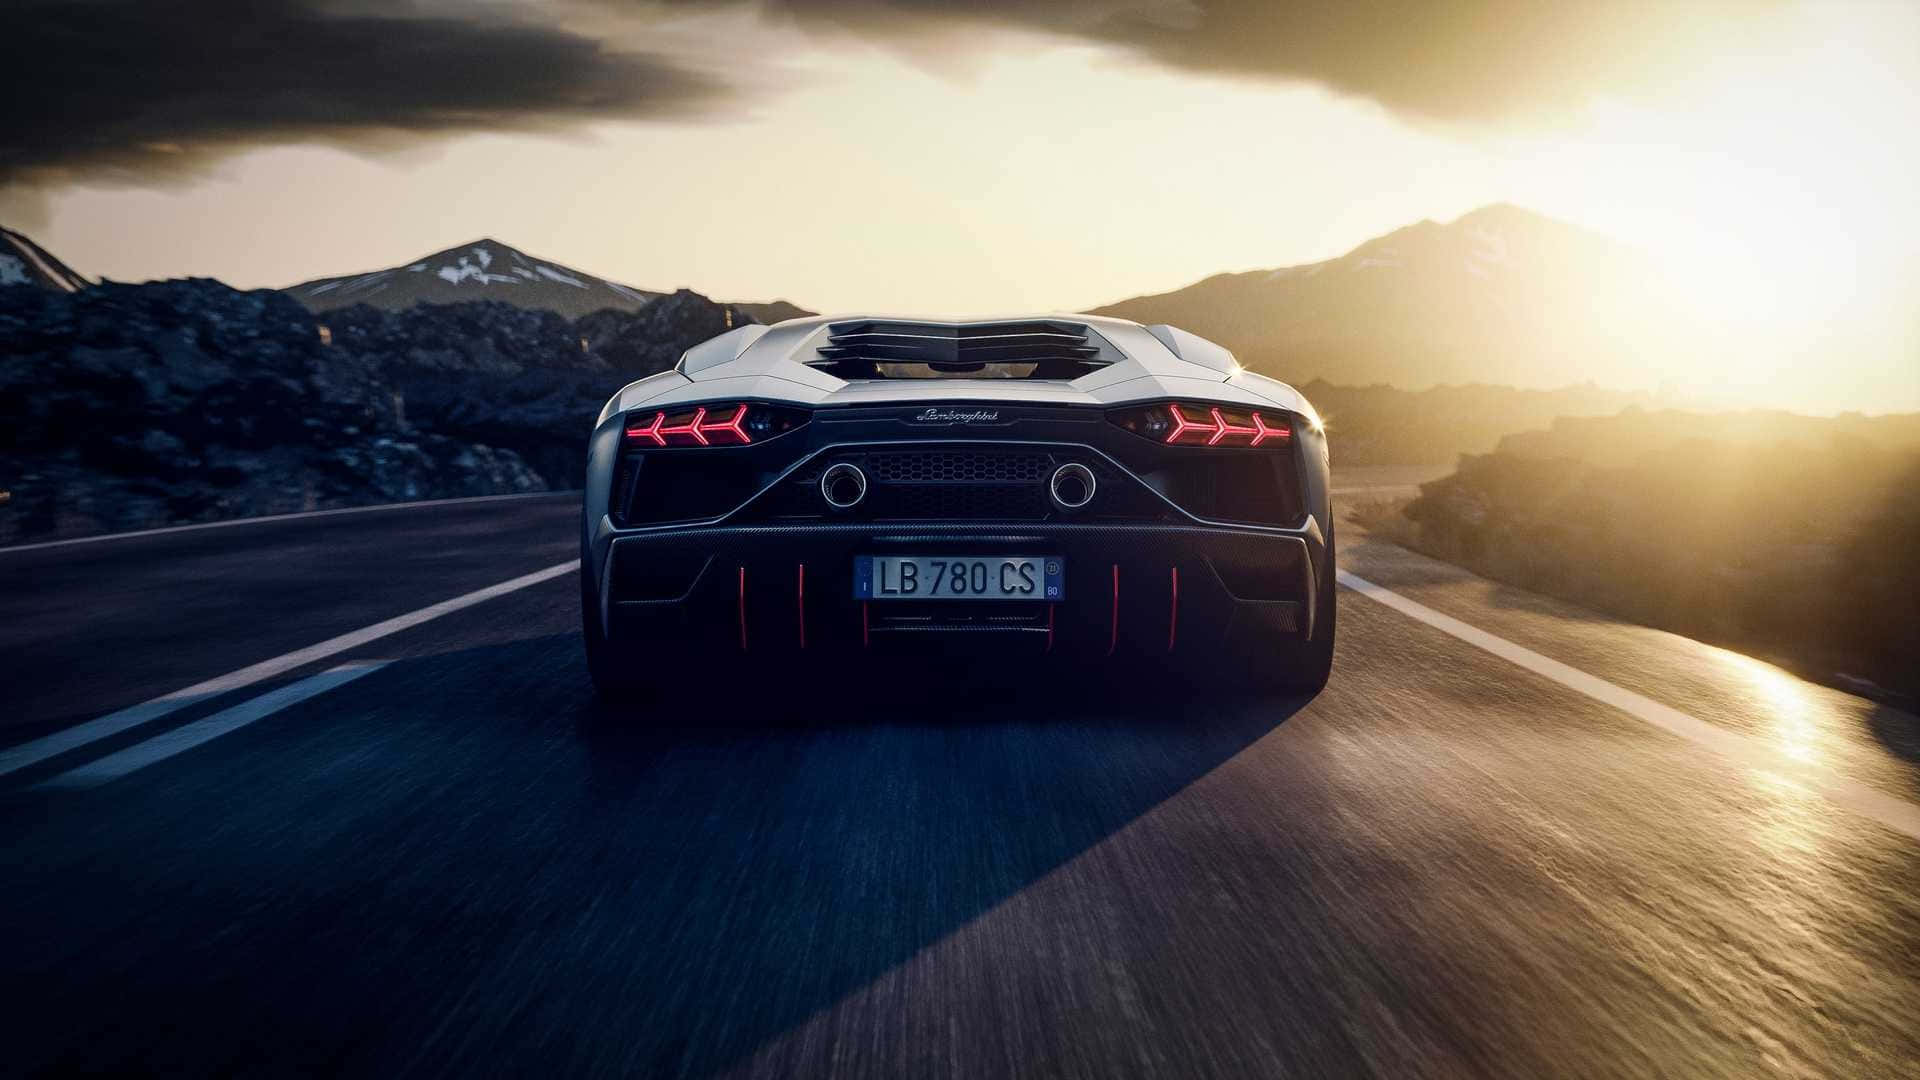 Exquisite Design - Lamborghini Aventador In Action Wallpaper